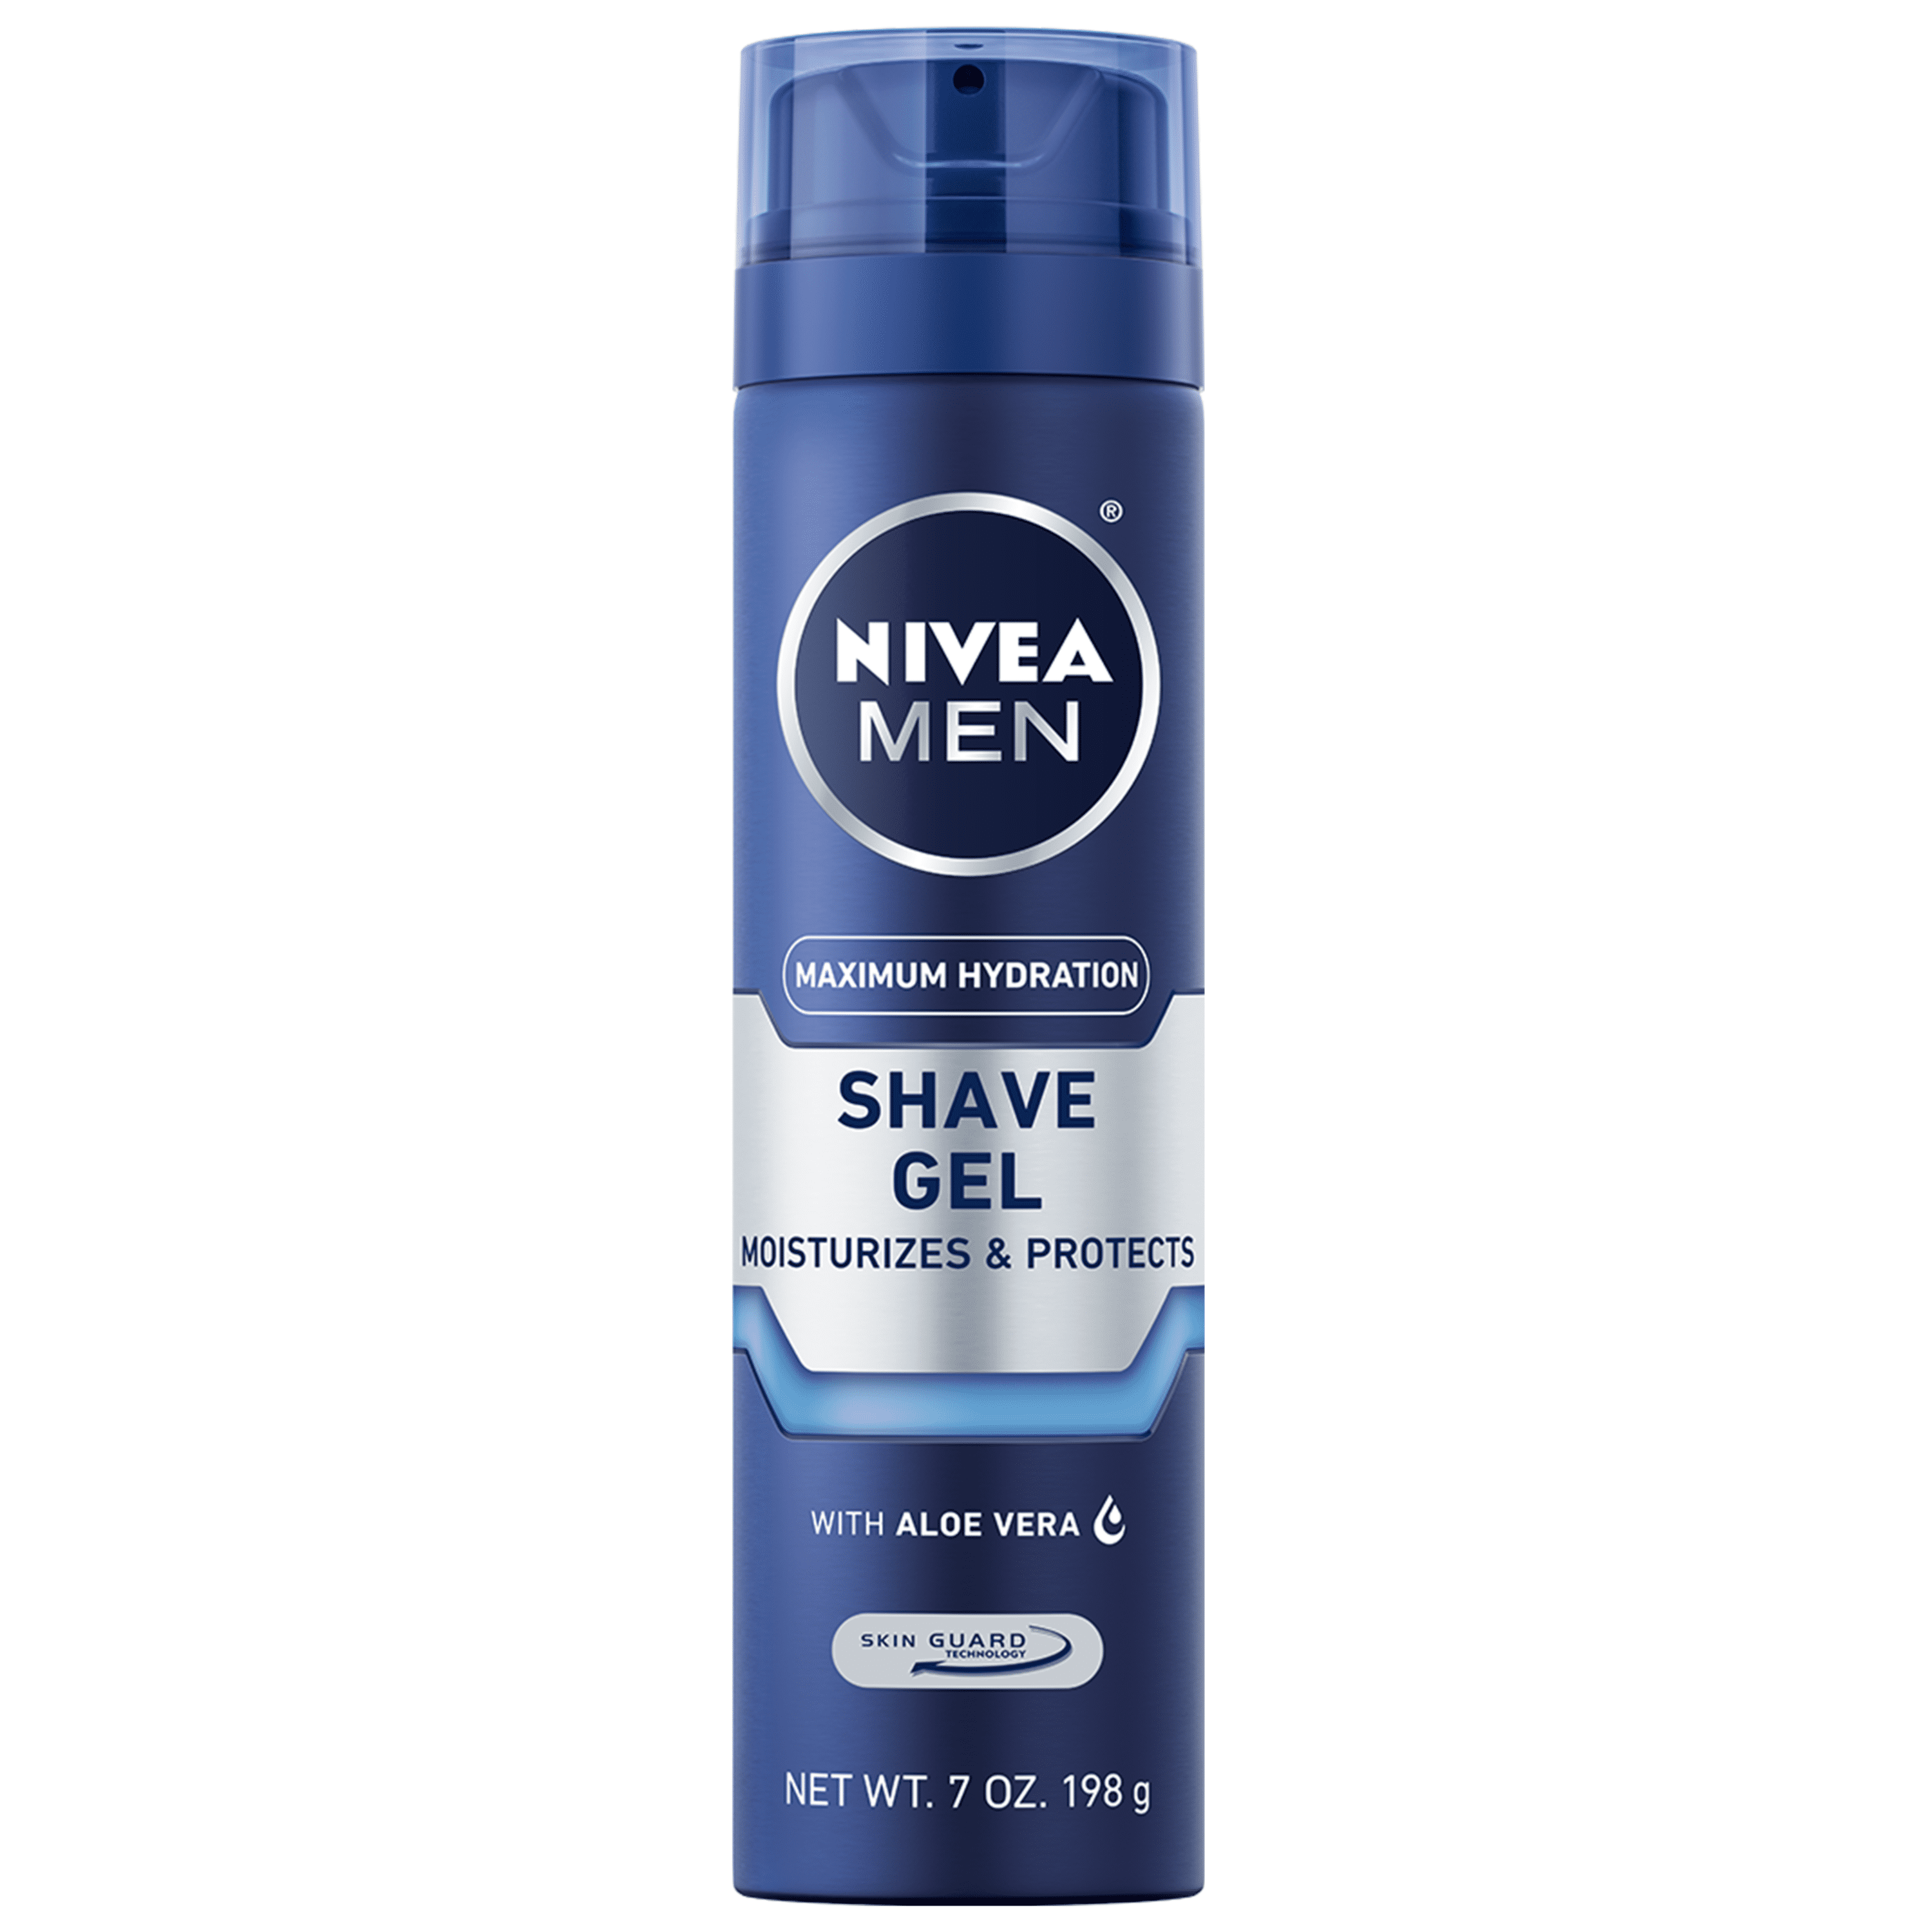 NIVEA MEN Maximum Hydration Shave Gel, 7 Oz Can Walmart.com